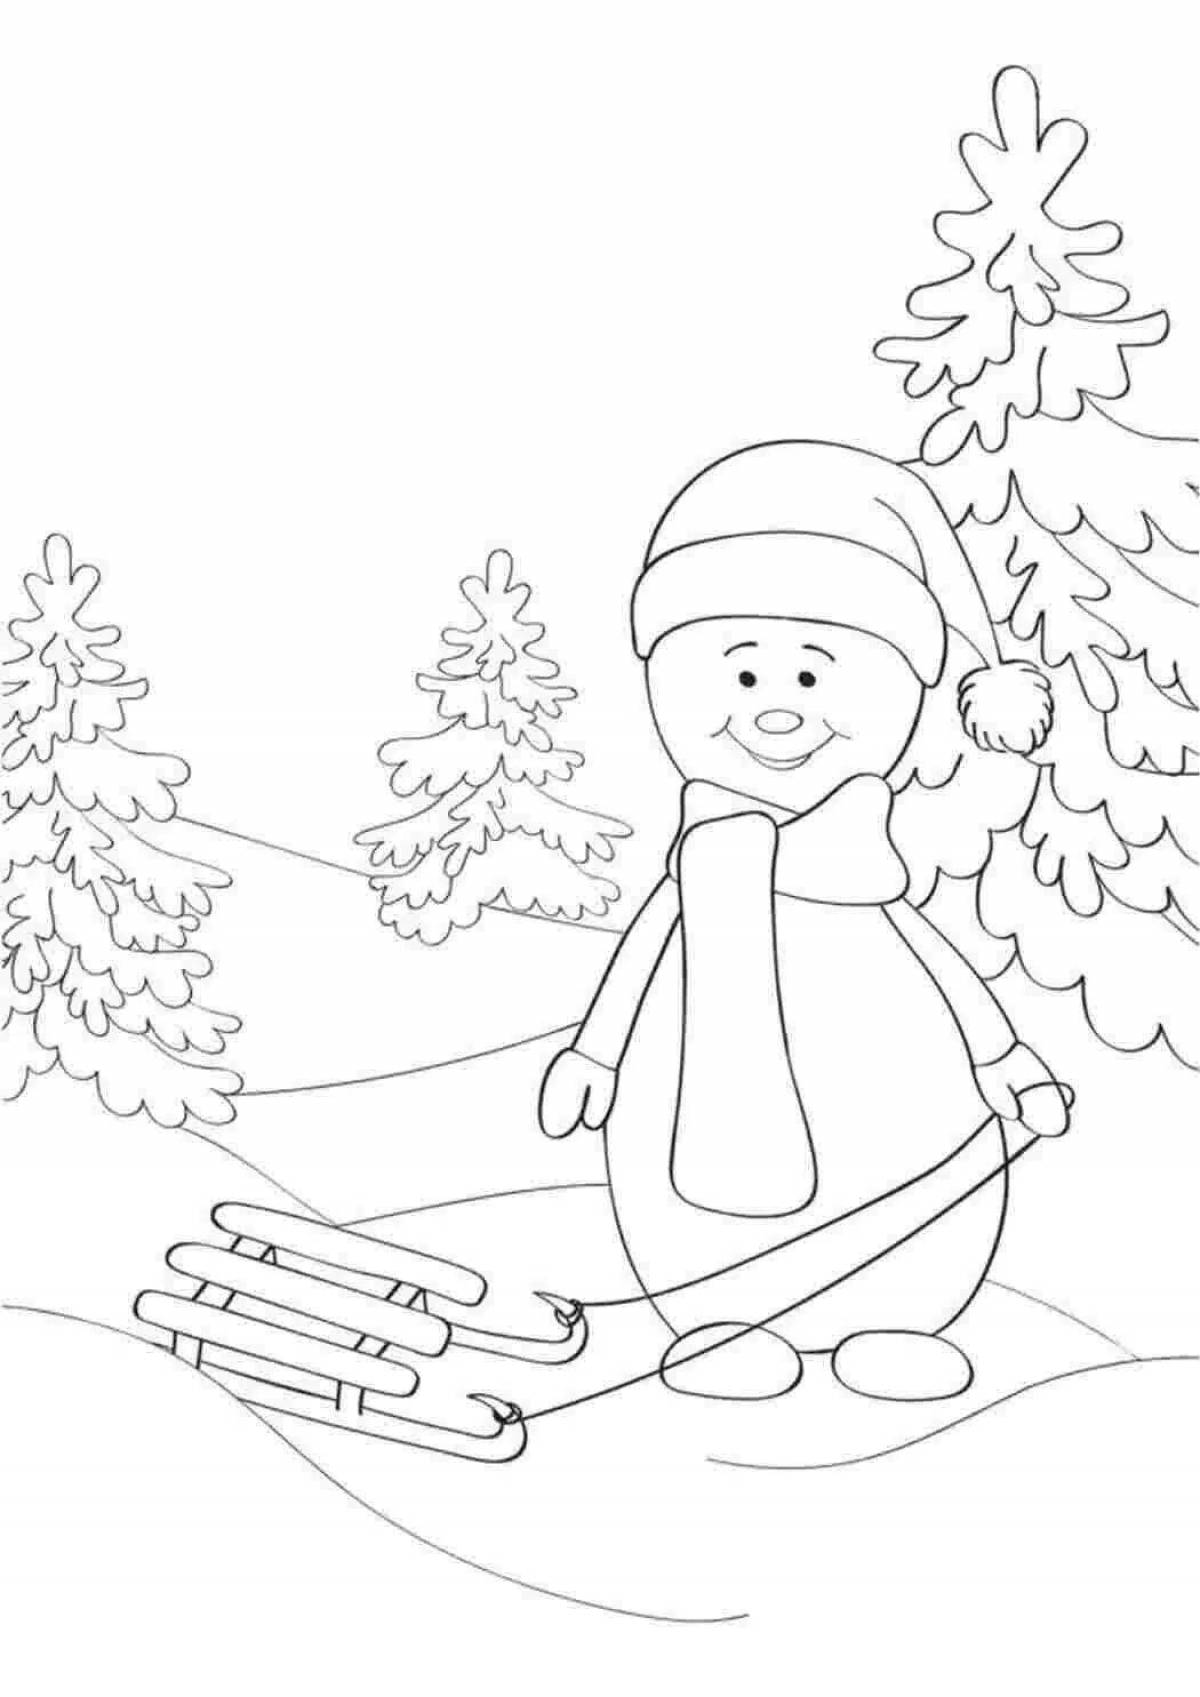 Раскраска буйный снеговик на лыжах